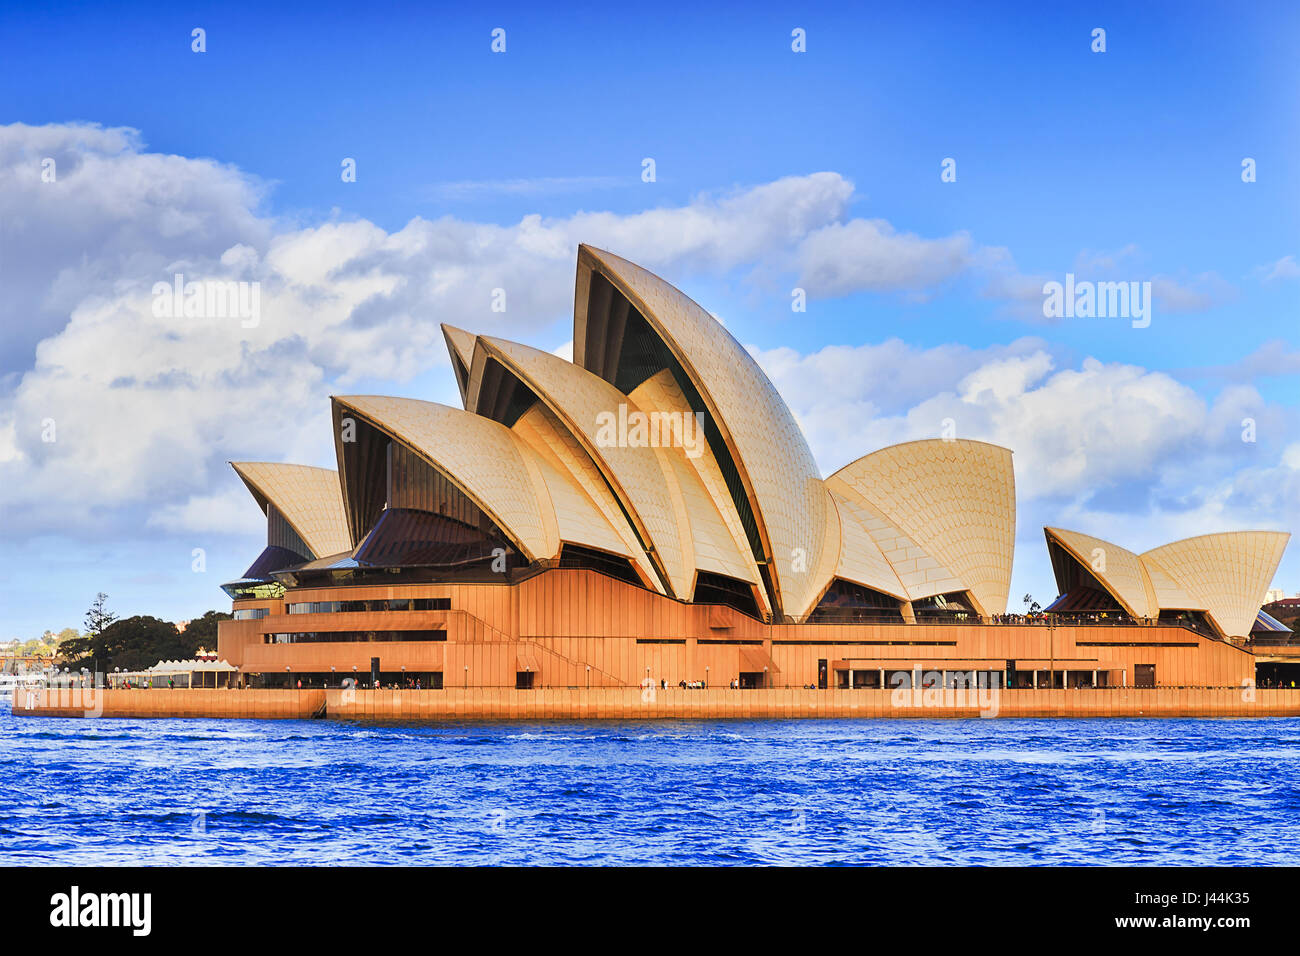 Sydney, Australien - 30. April 2017: australische Wahrzeichen Sydney Opera House am Ufer des Hafens von Sydney an einem sonnigen Tag gegen blauen Himmel. Stockfoto